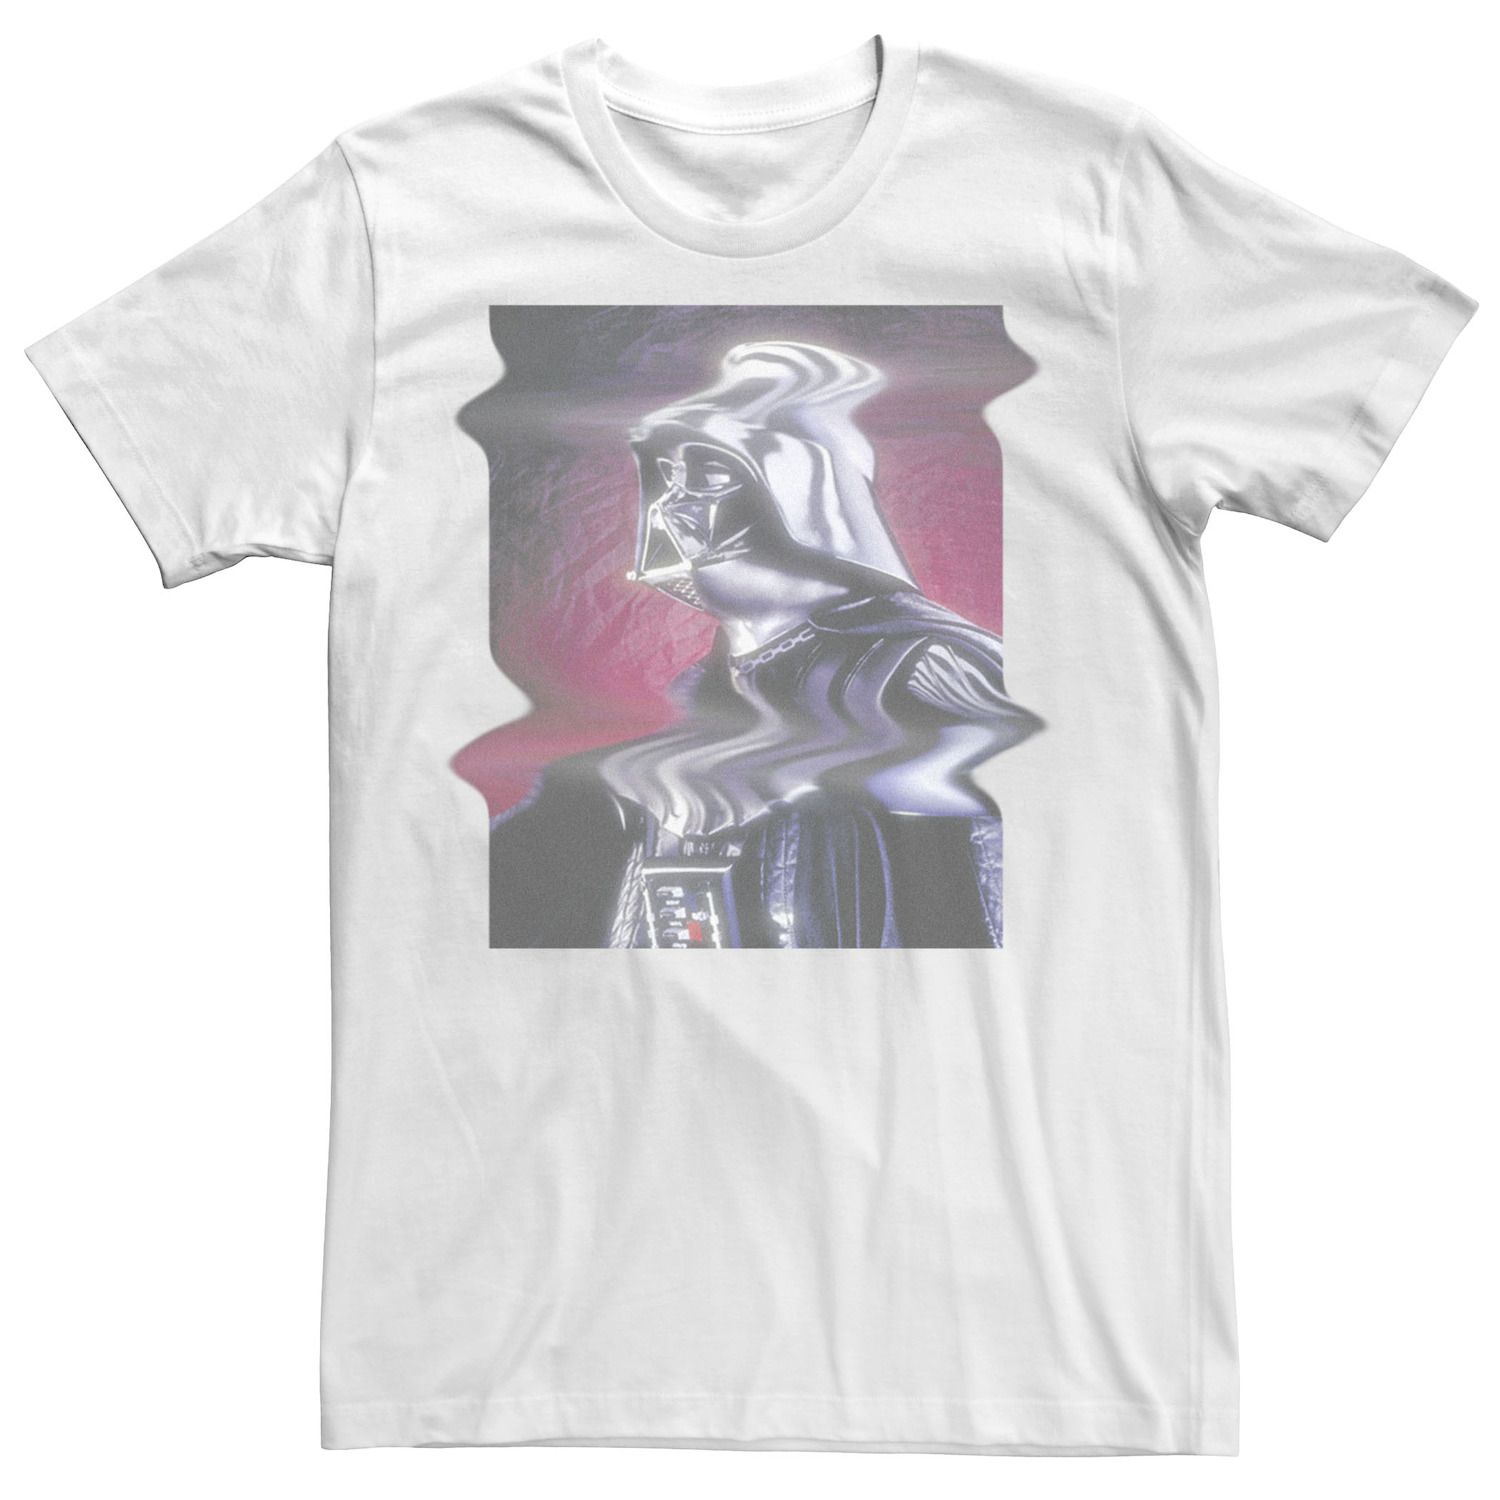 Мужская футболка с искаженным портретом Дарта Вейдера Star Wars